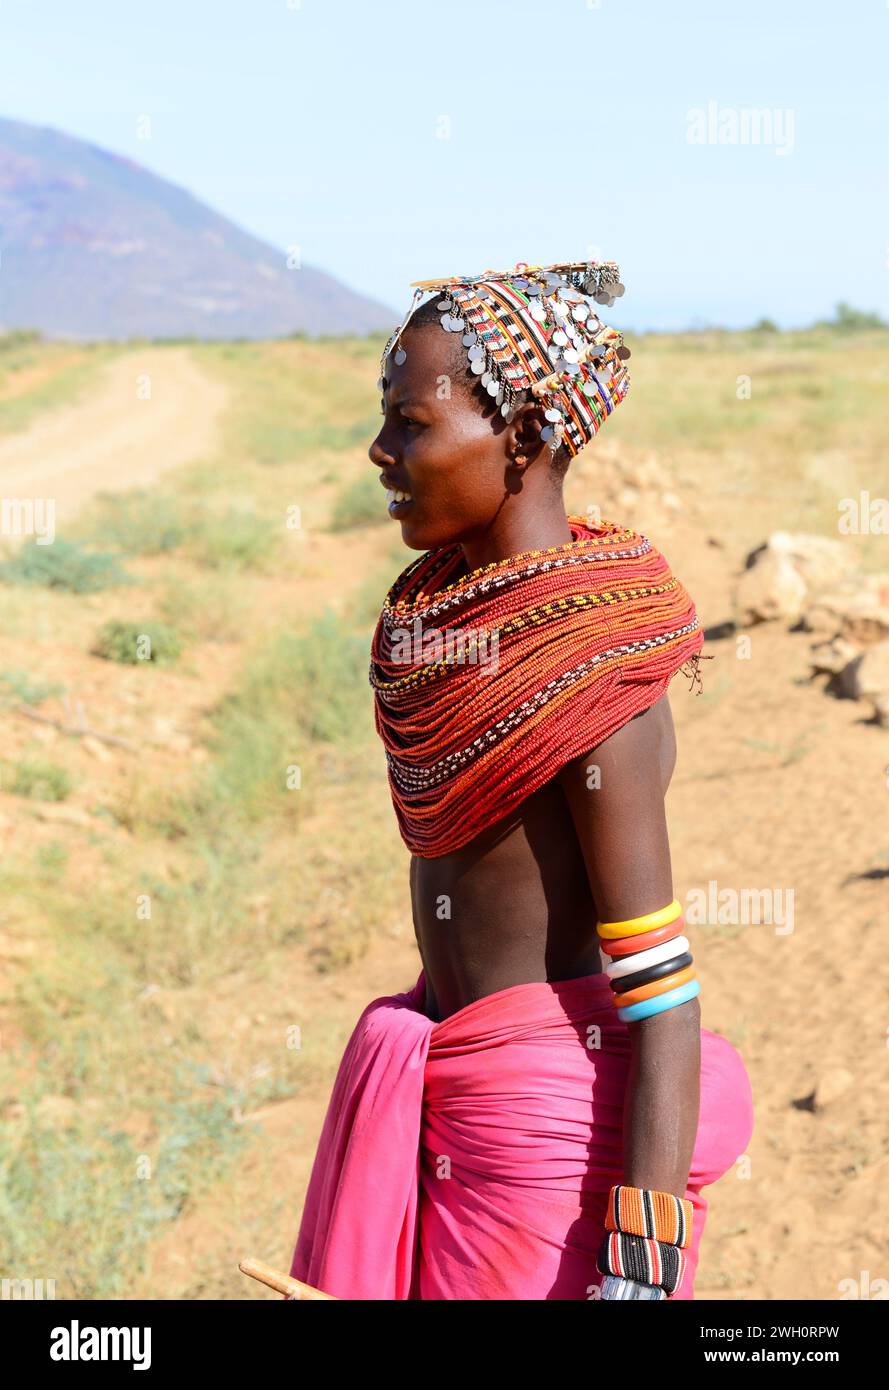 Eine junge Samburu-Frau, die eine traditionelle Halskette mit mehreren Perlen trägt. Laisamis-South Horr Road, Kenia Stockfoto